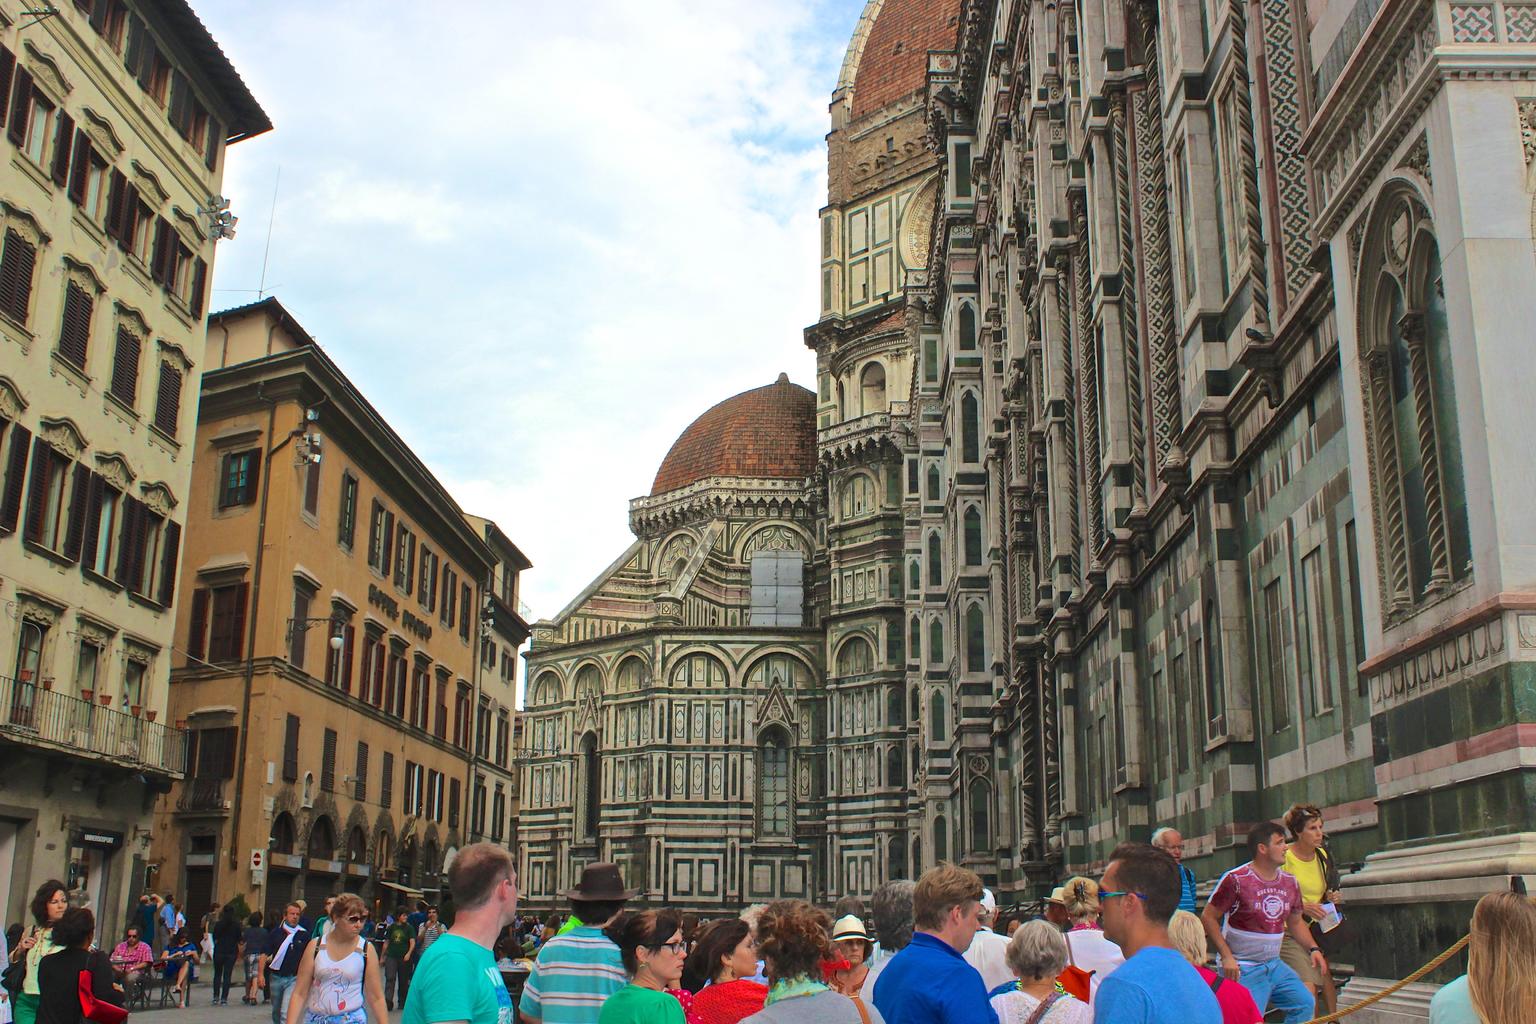 Walking through Florence